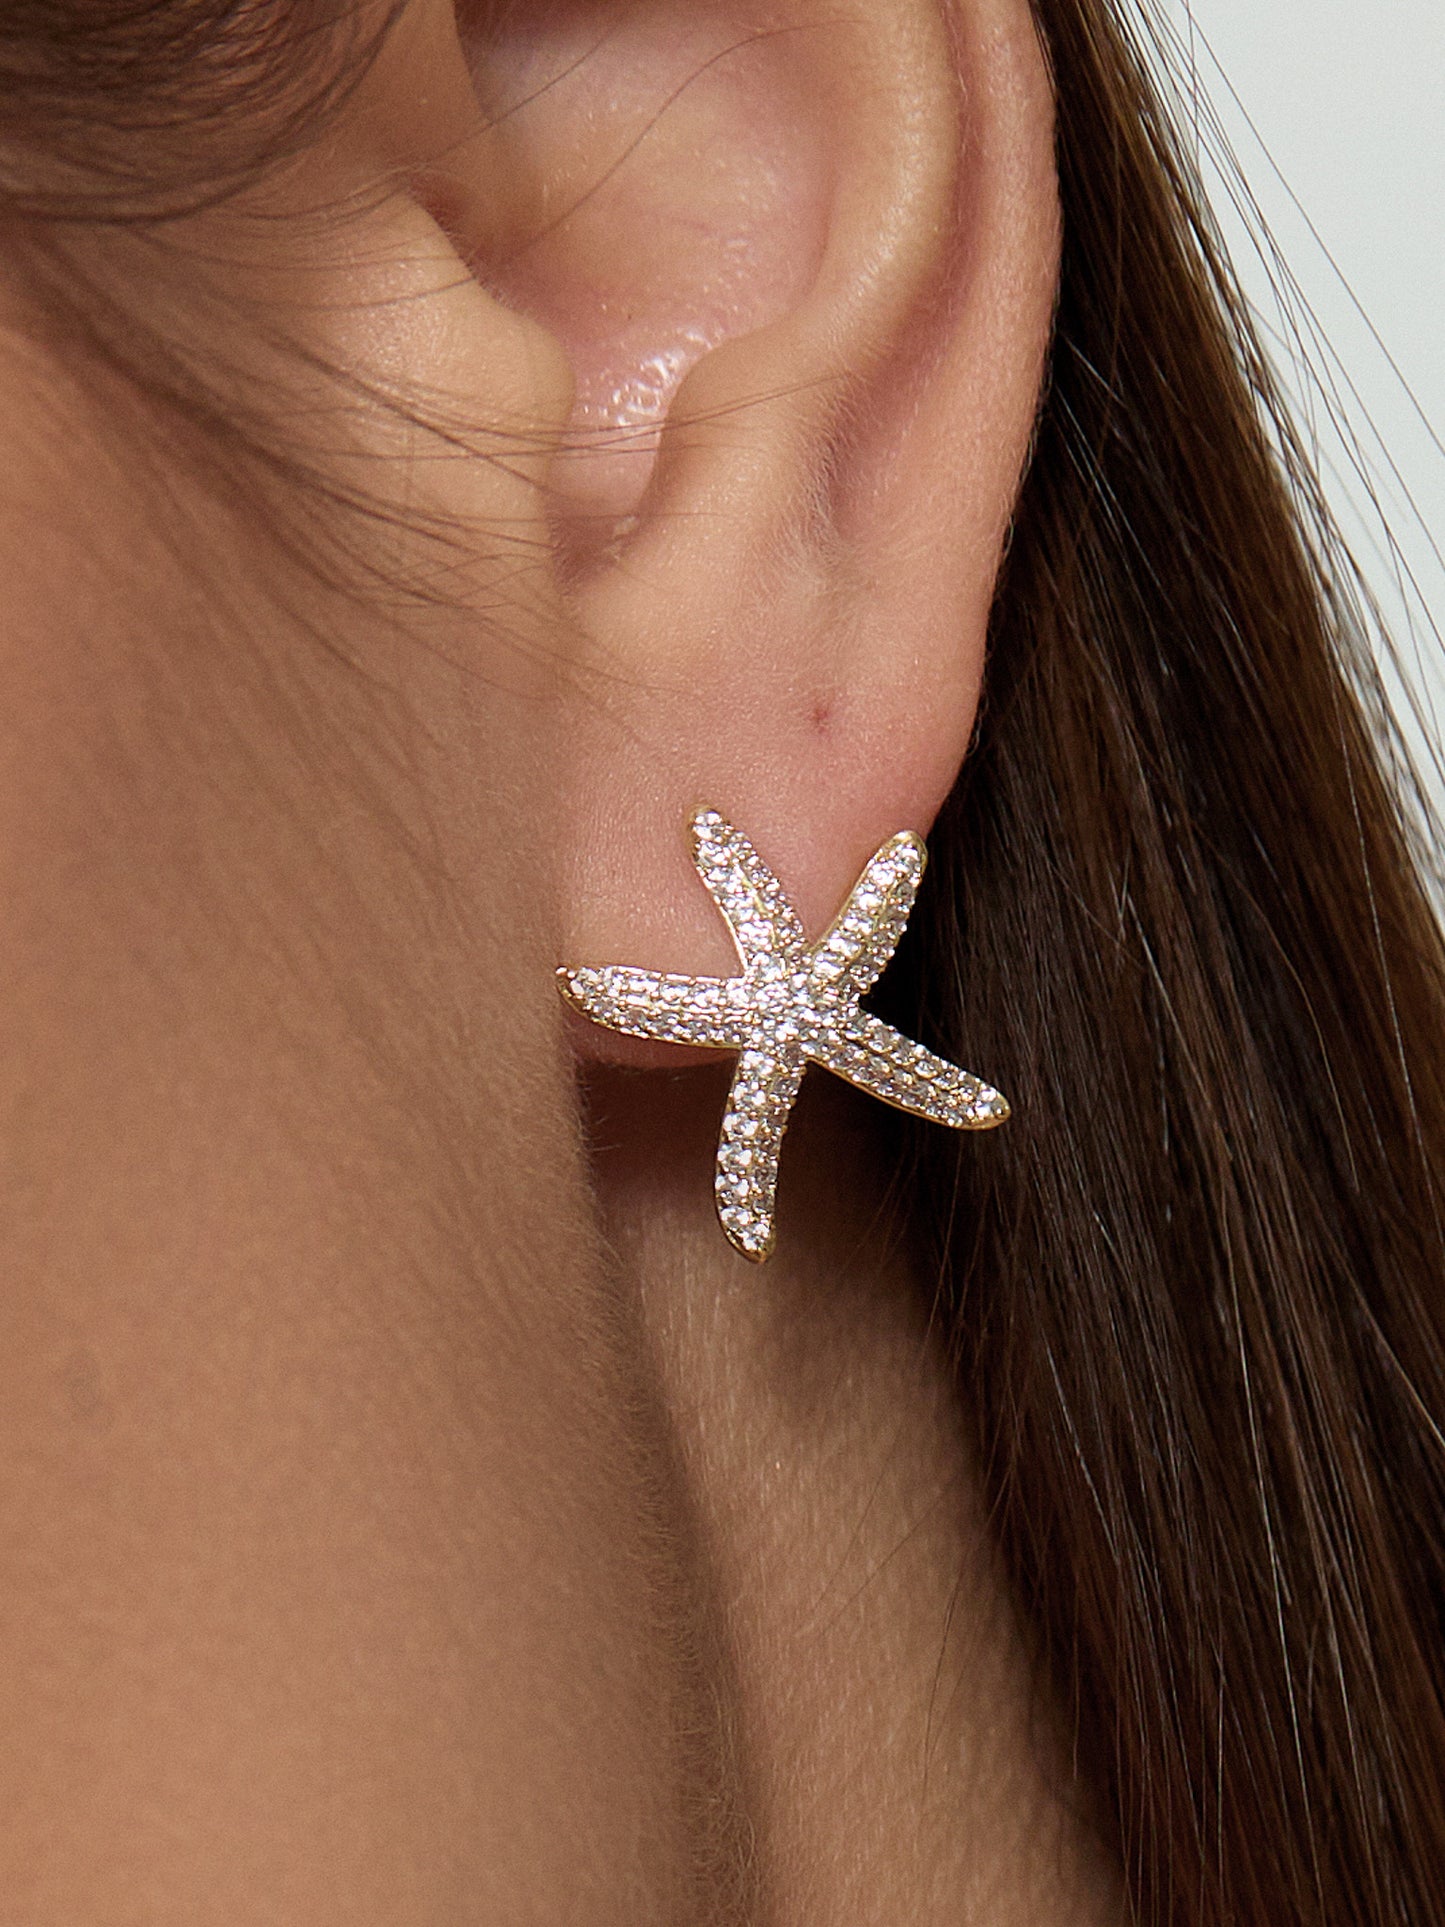 Marseille Starfish Stud Earrings